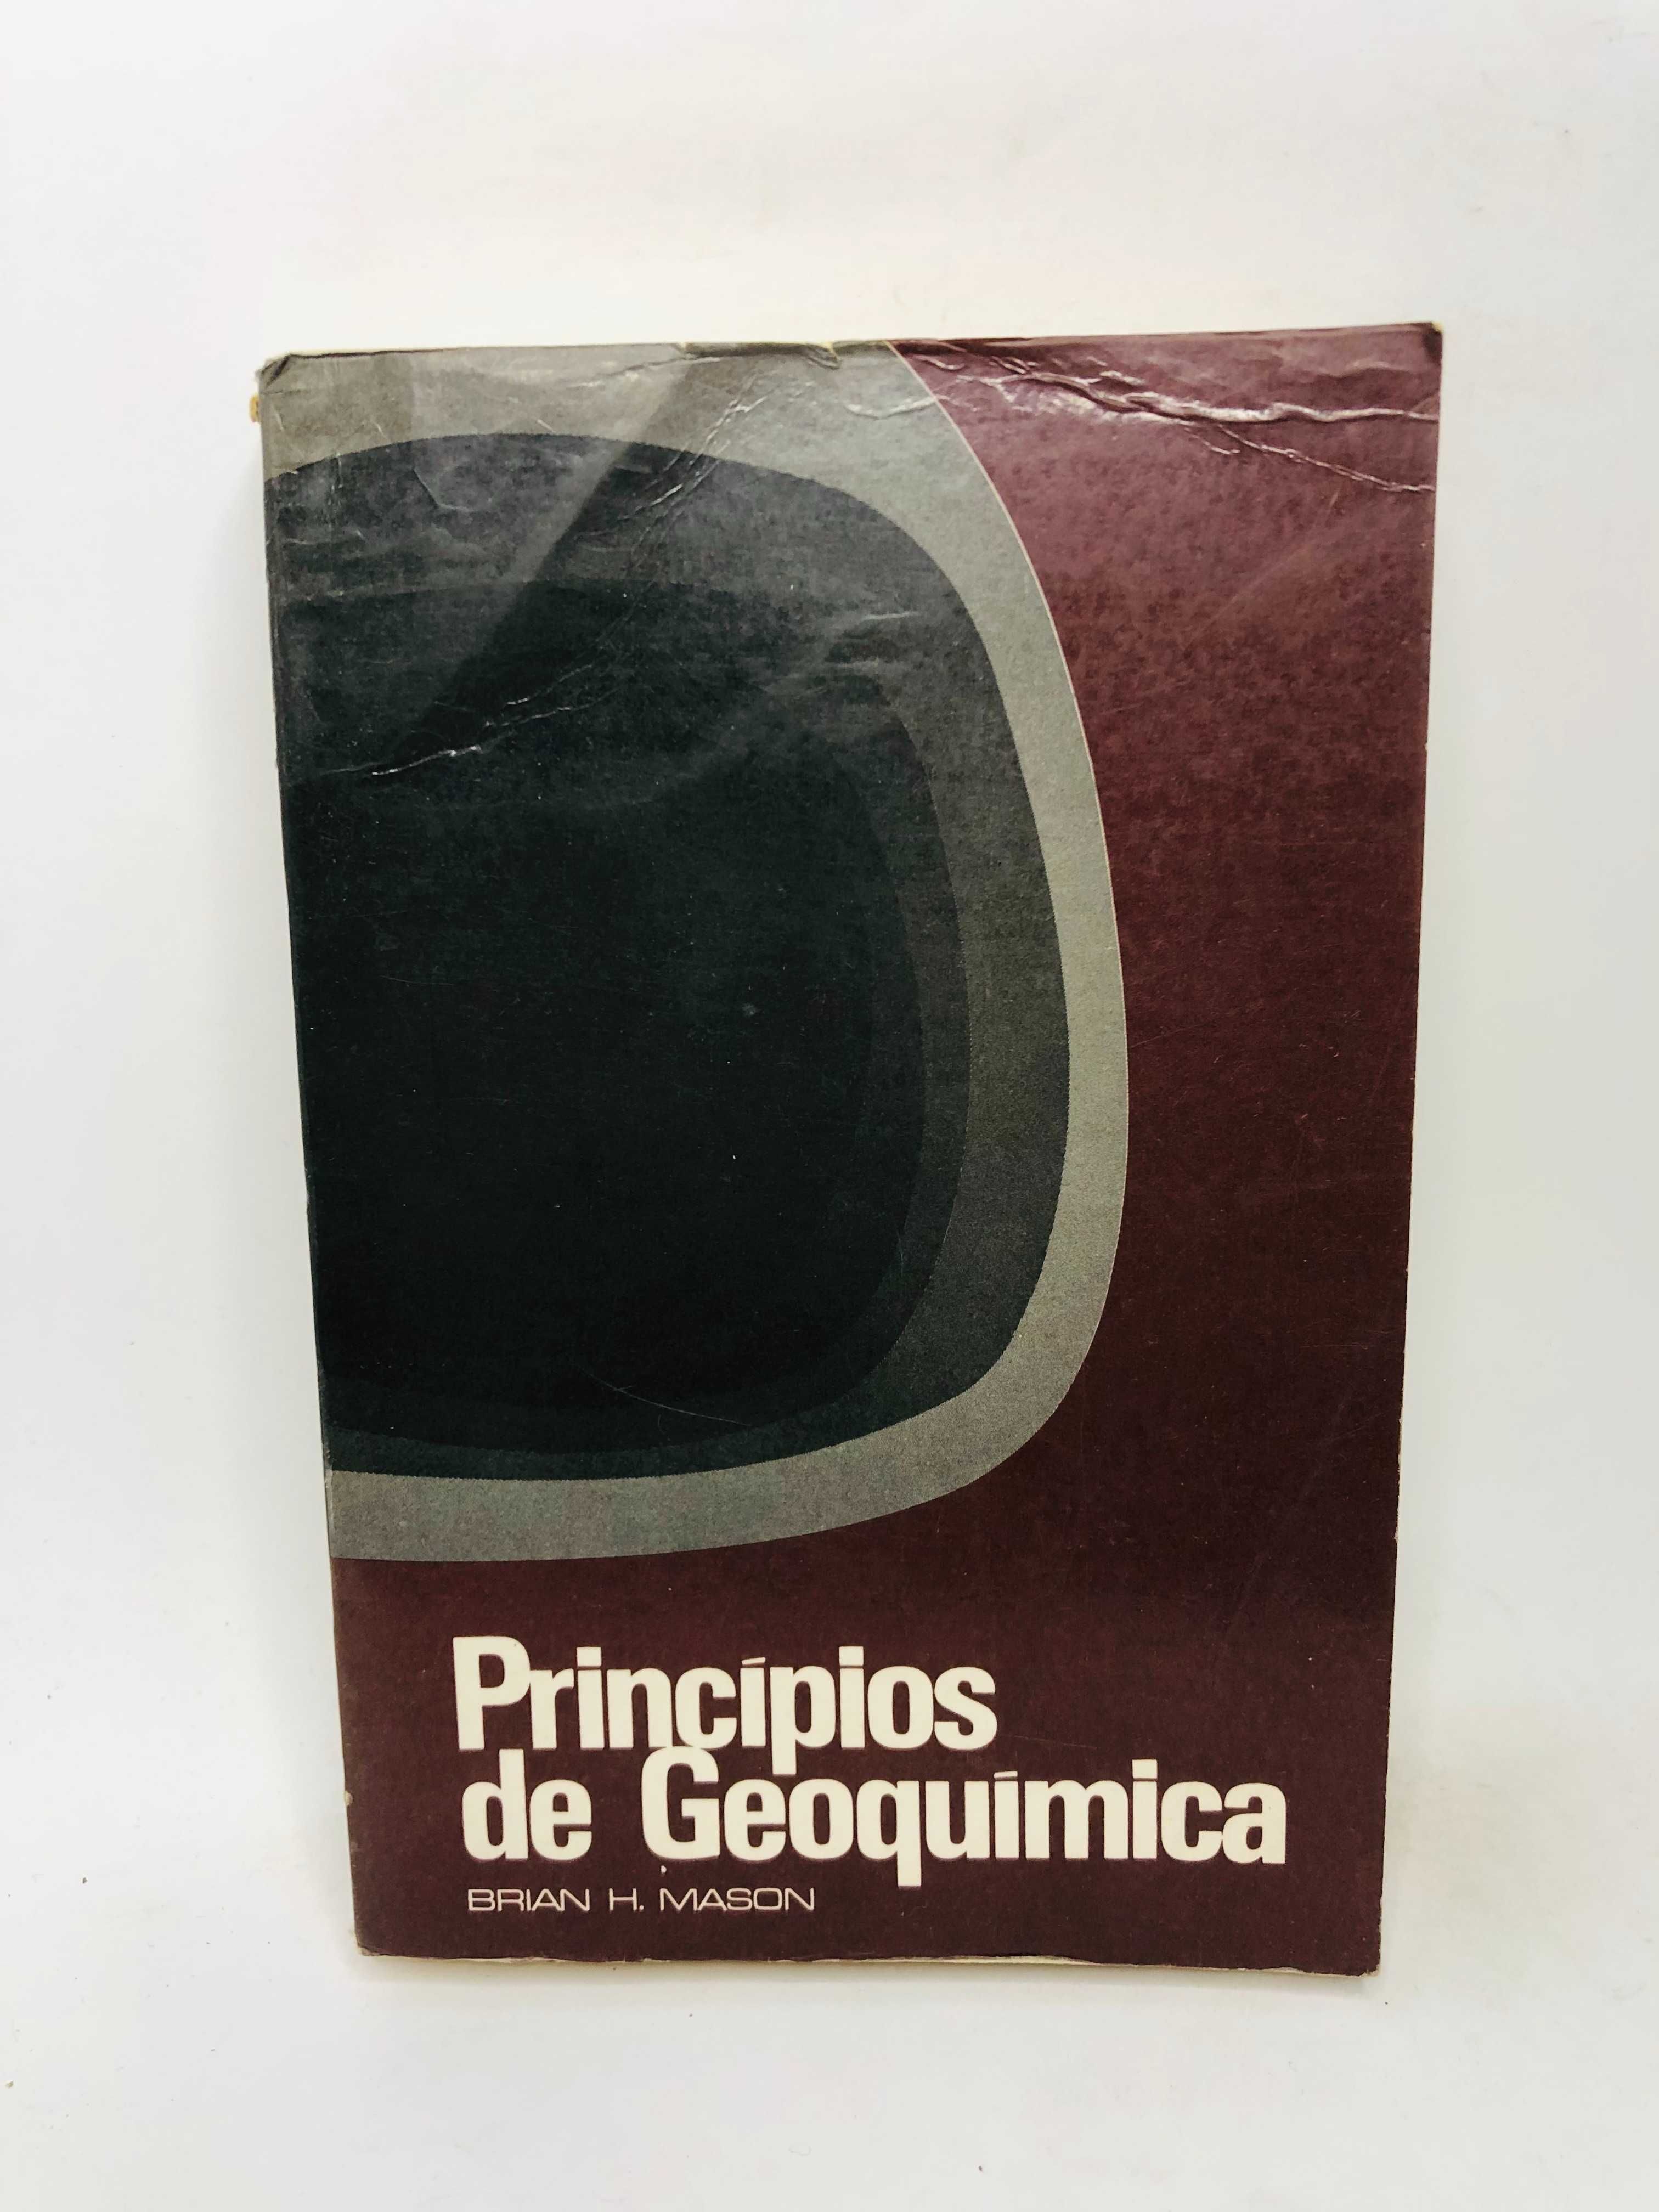 Principios de Geoquimica - Brian H. Mason